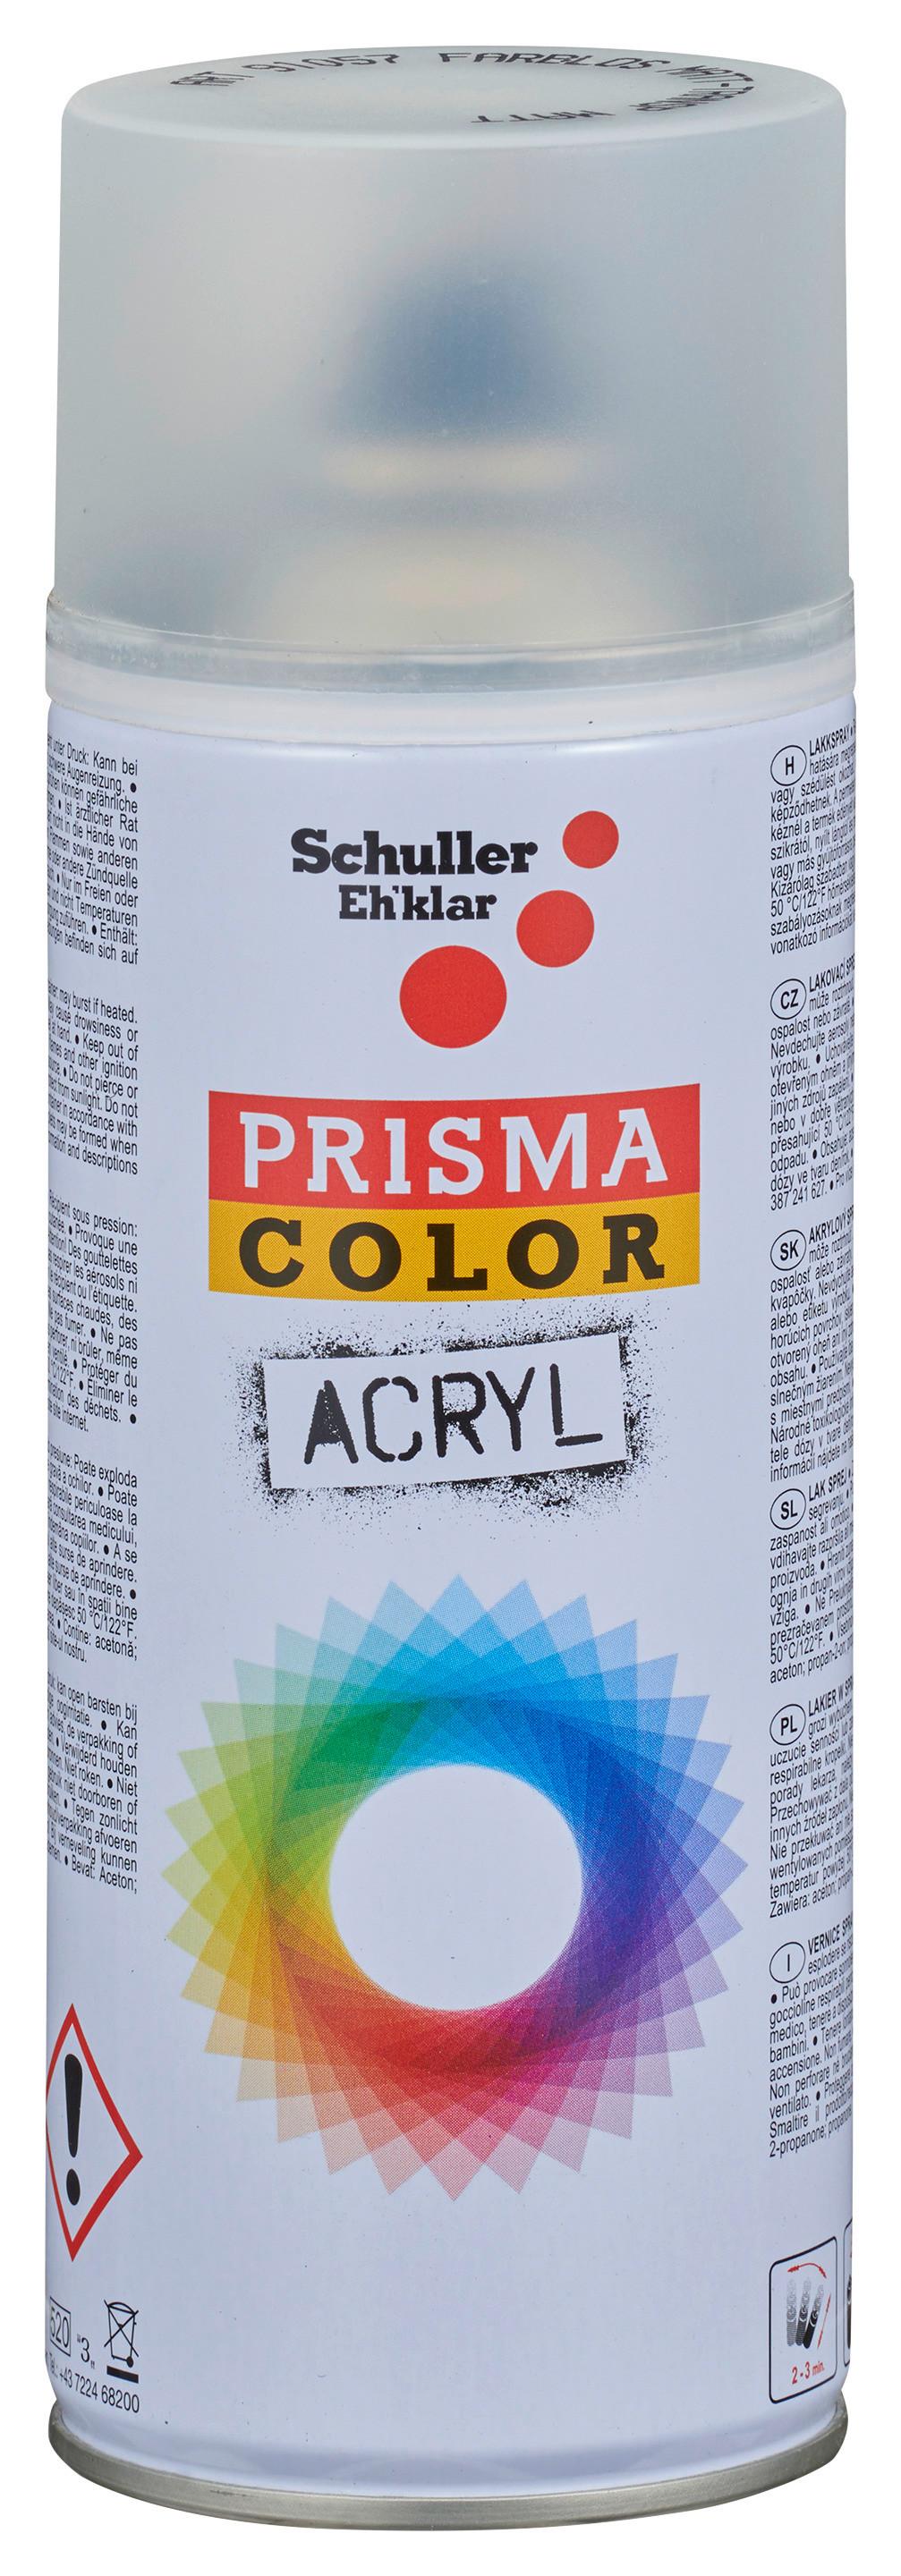 PRISMA COLOR Lack Spray RAL 1021 400 ml kaufen